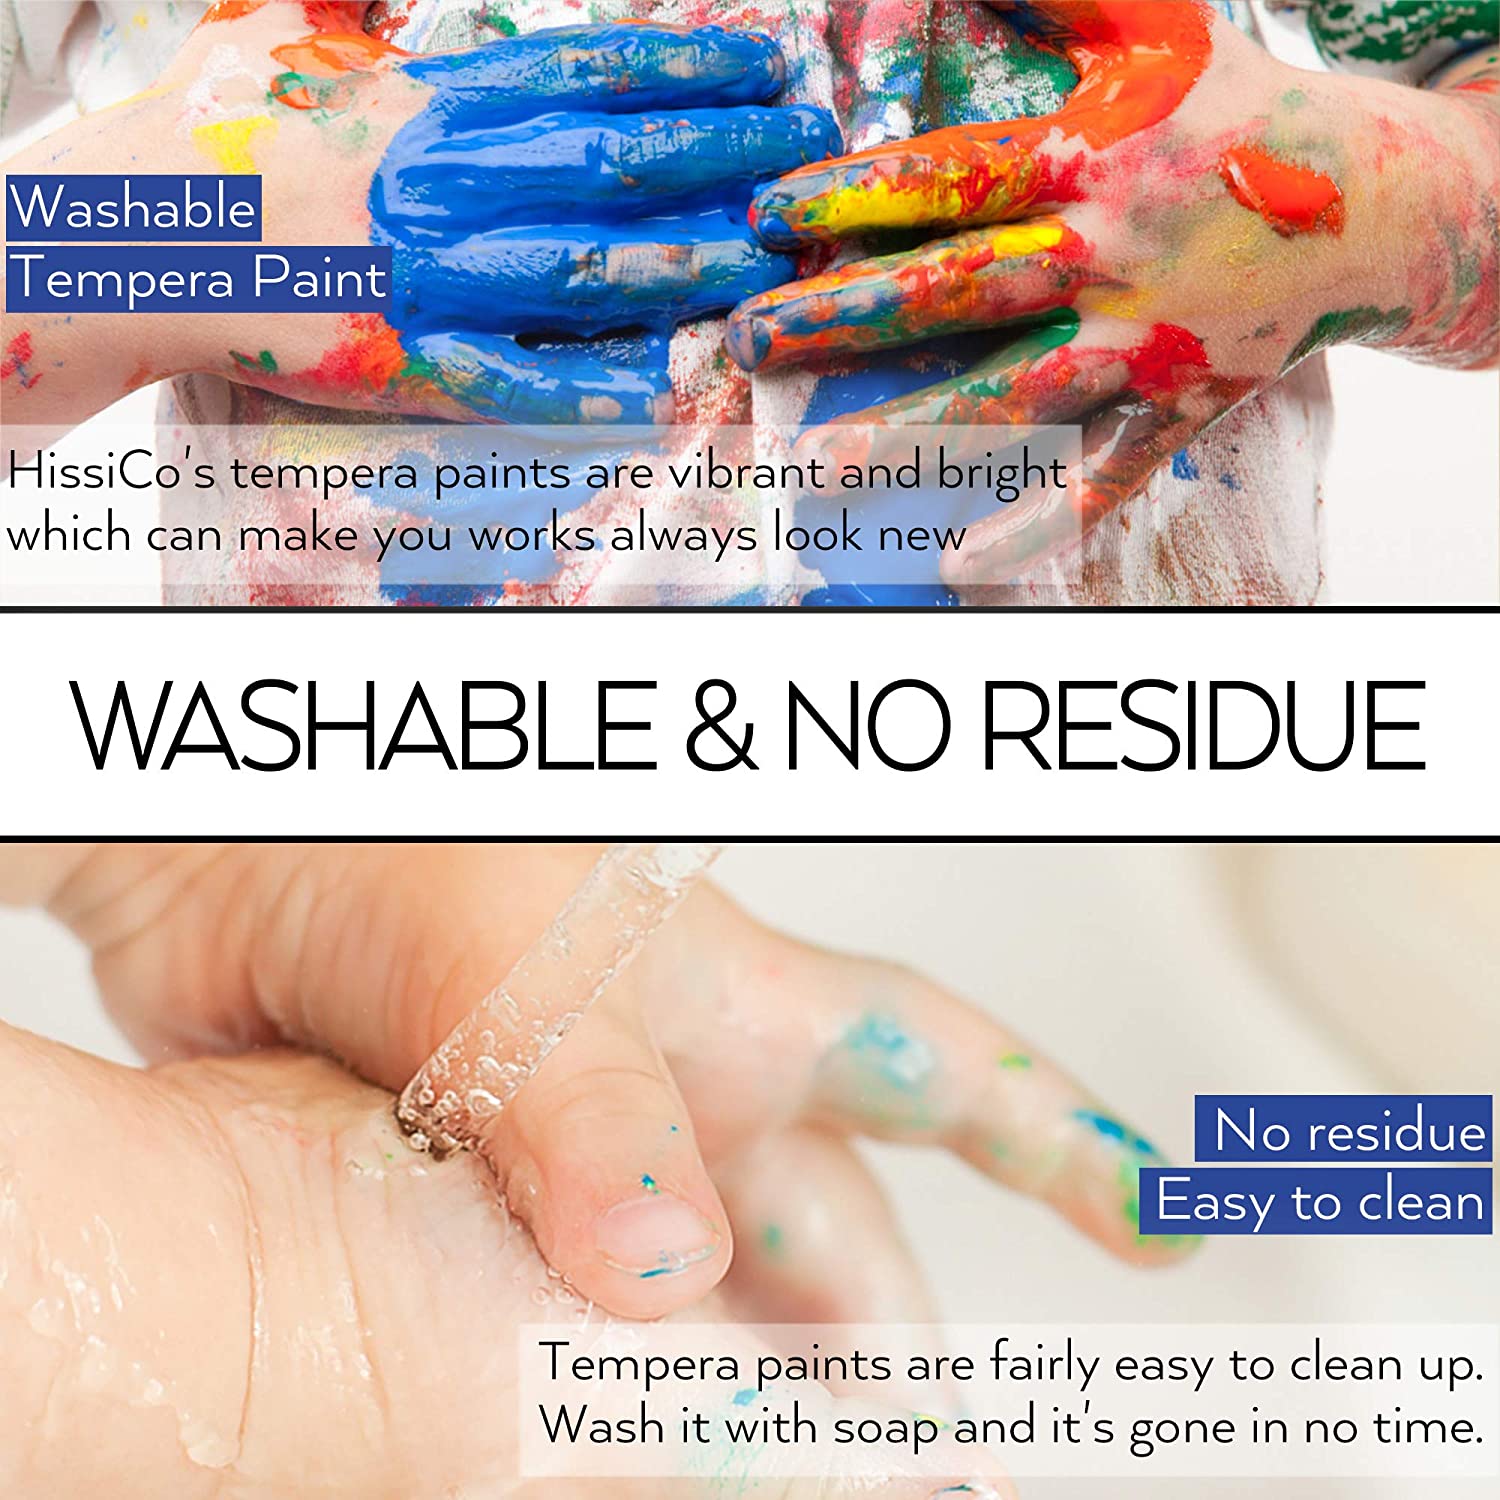 Washable Tempera Paint for Kids,30 Colors (2 oz Each) Liquid Poster Paint